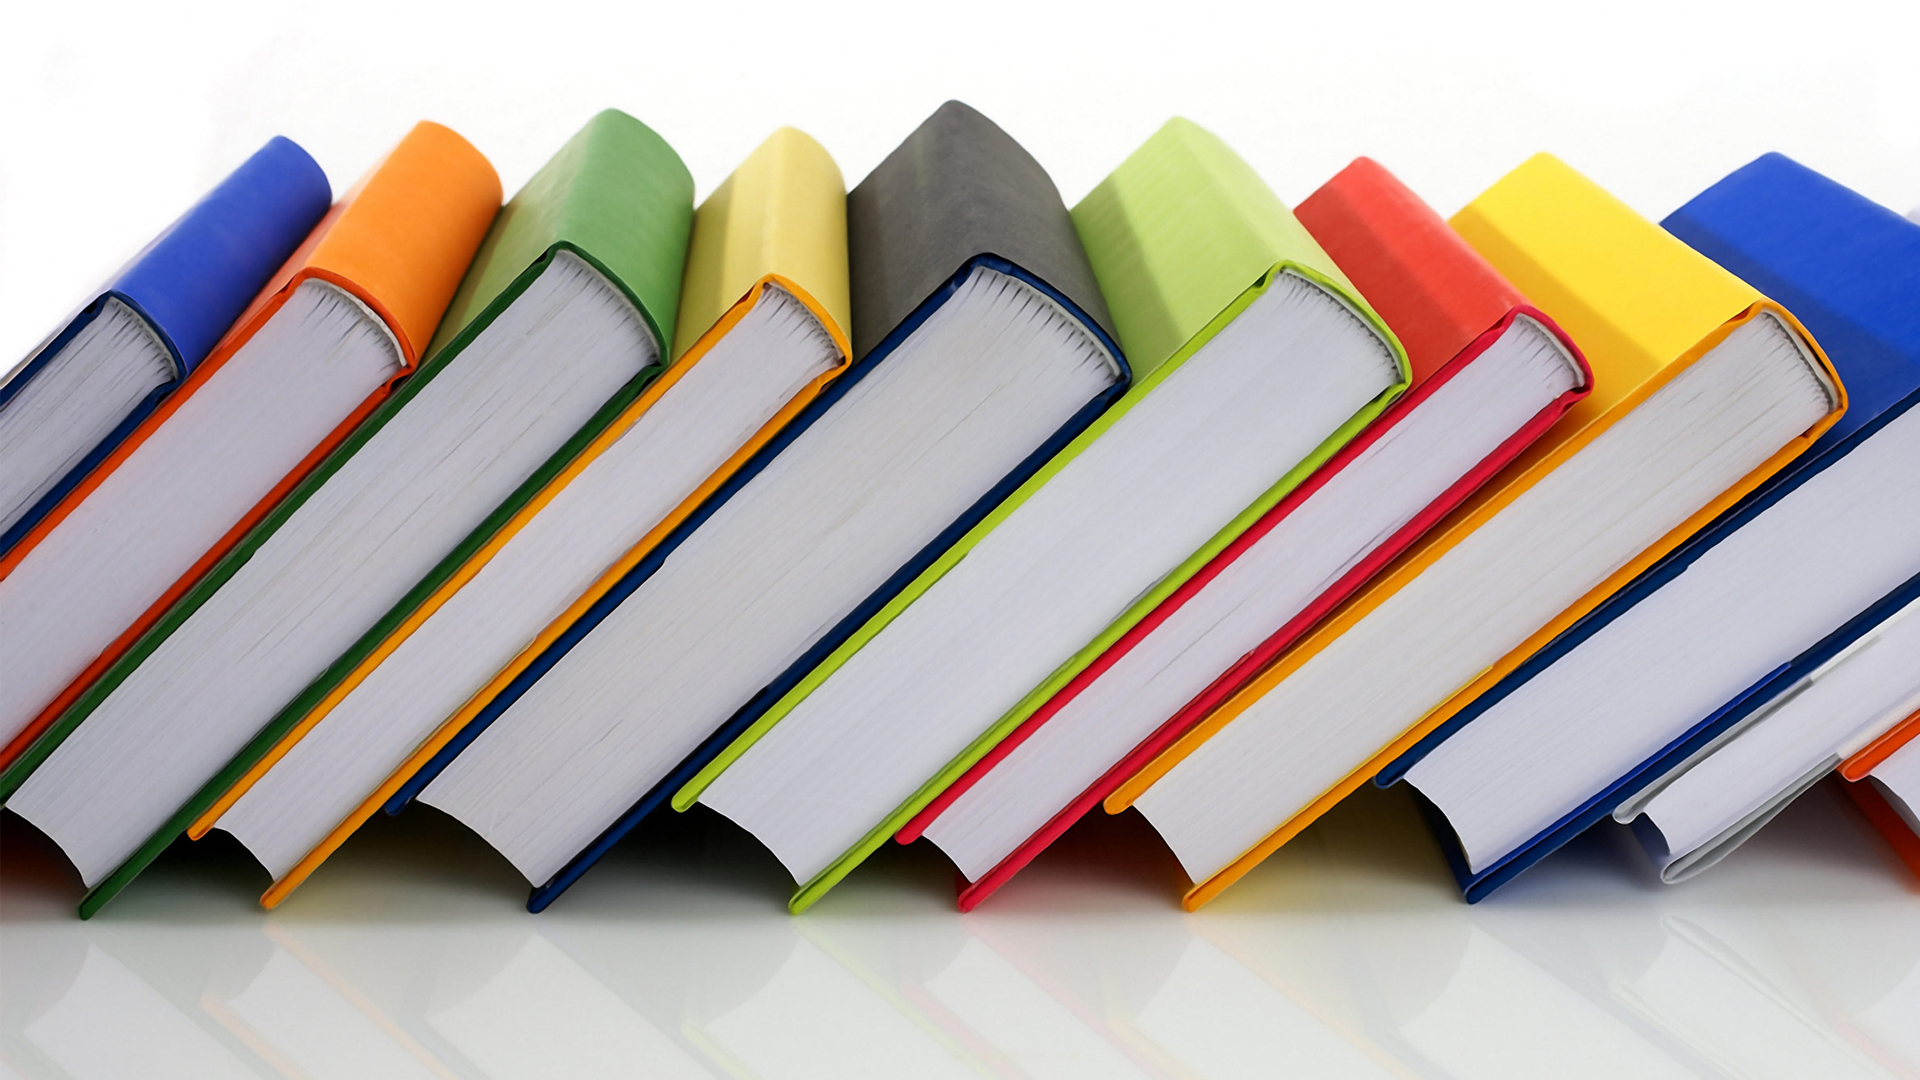 Fornitura gratuita e semigratuita dei libri di testo scuola secondaria - anno scolastico 2019/2020.